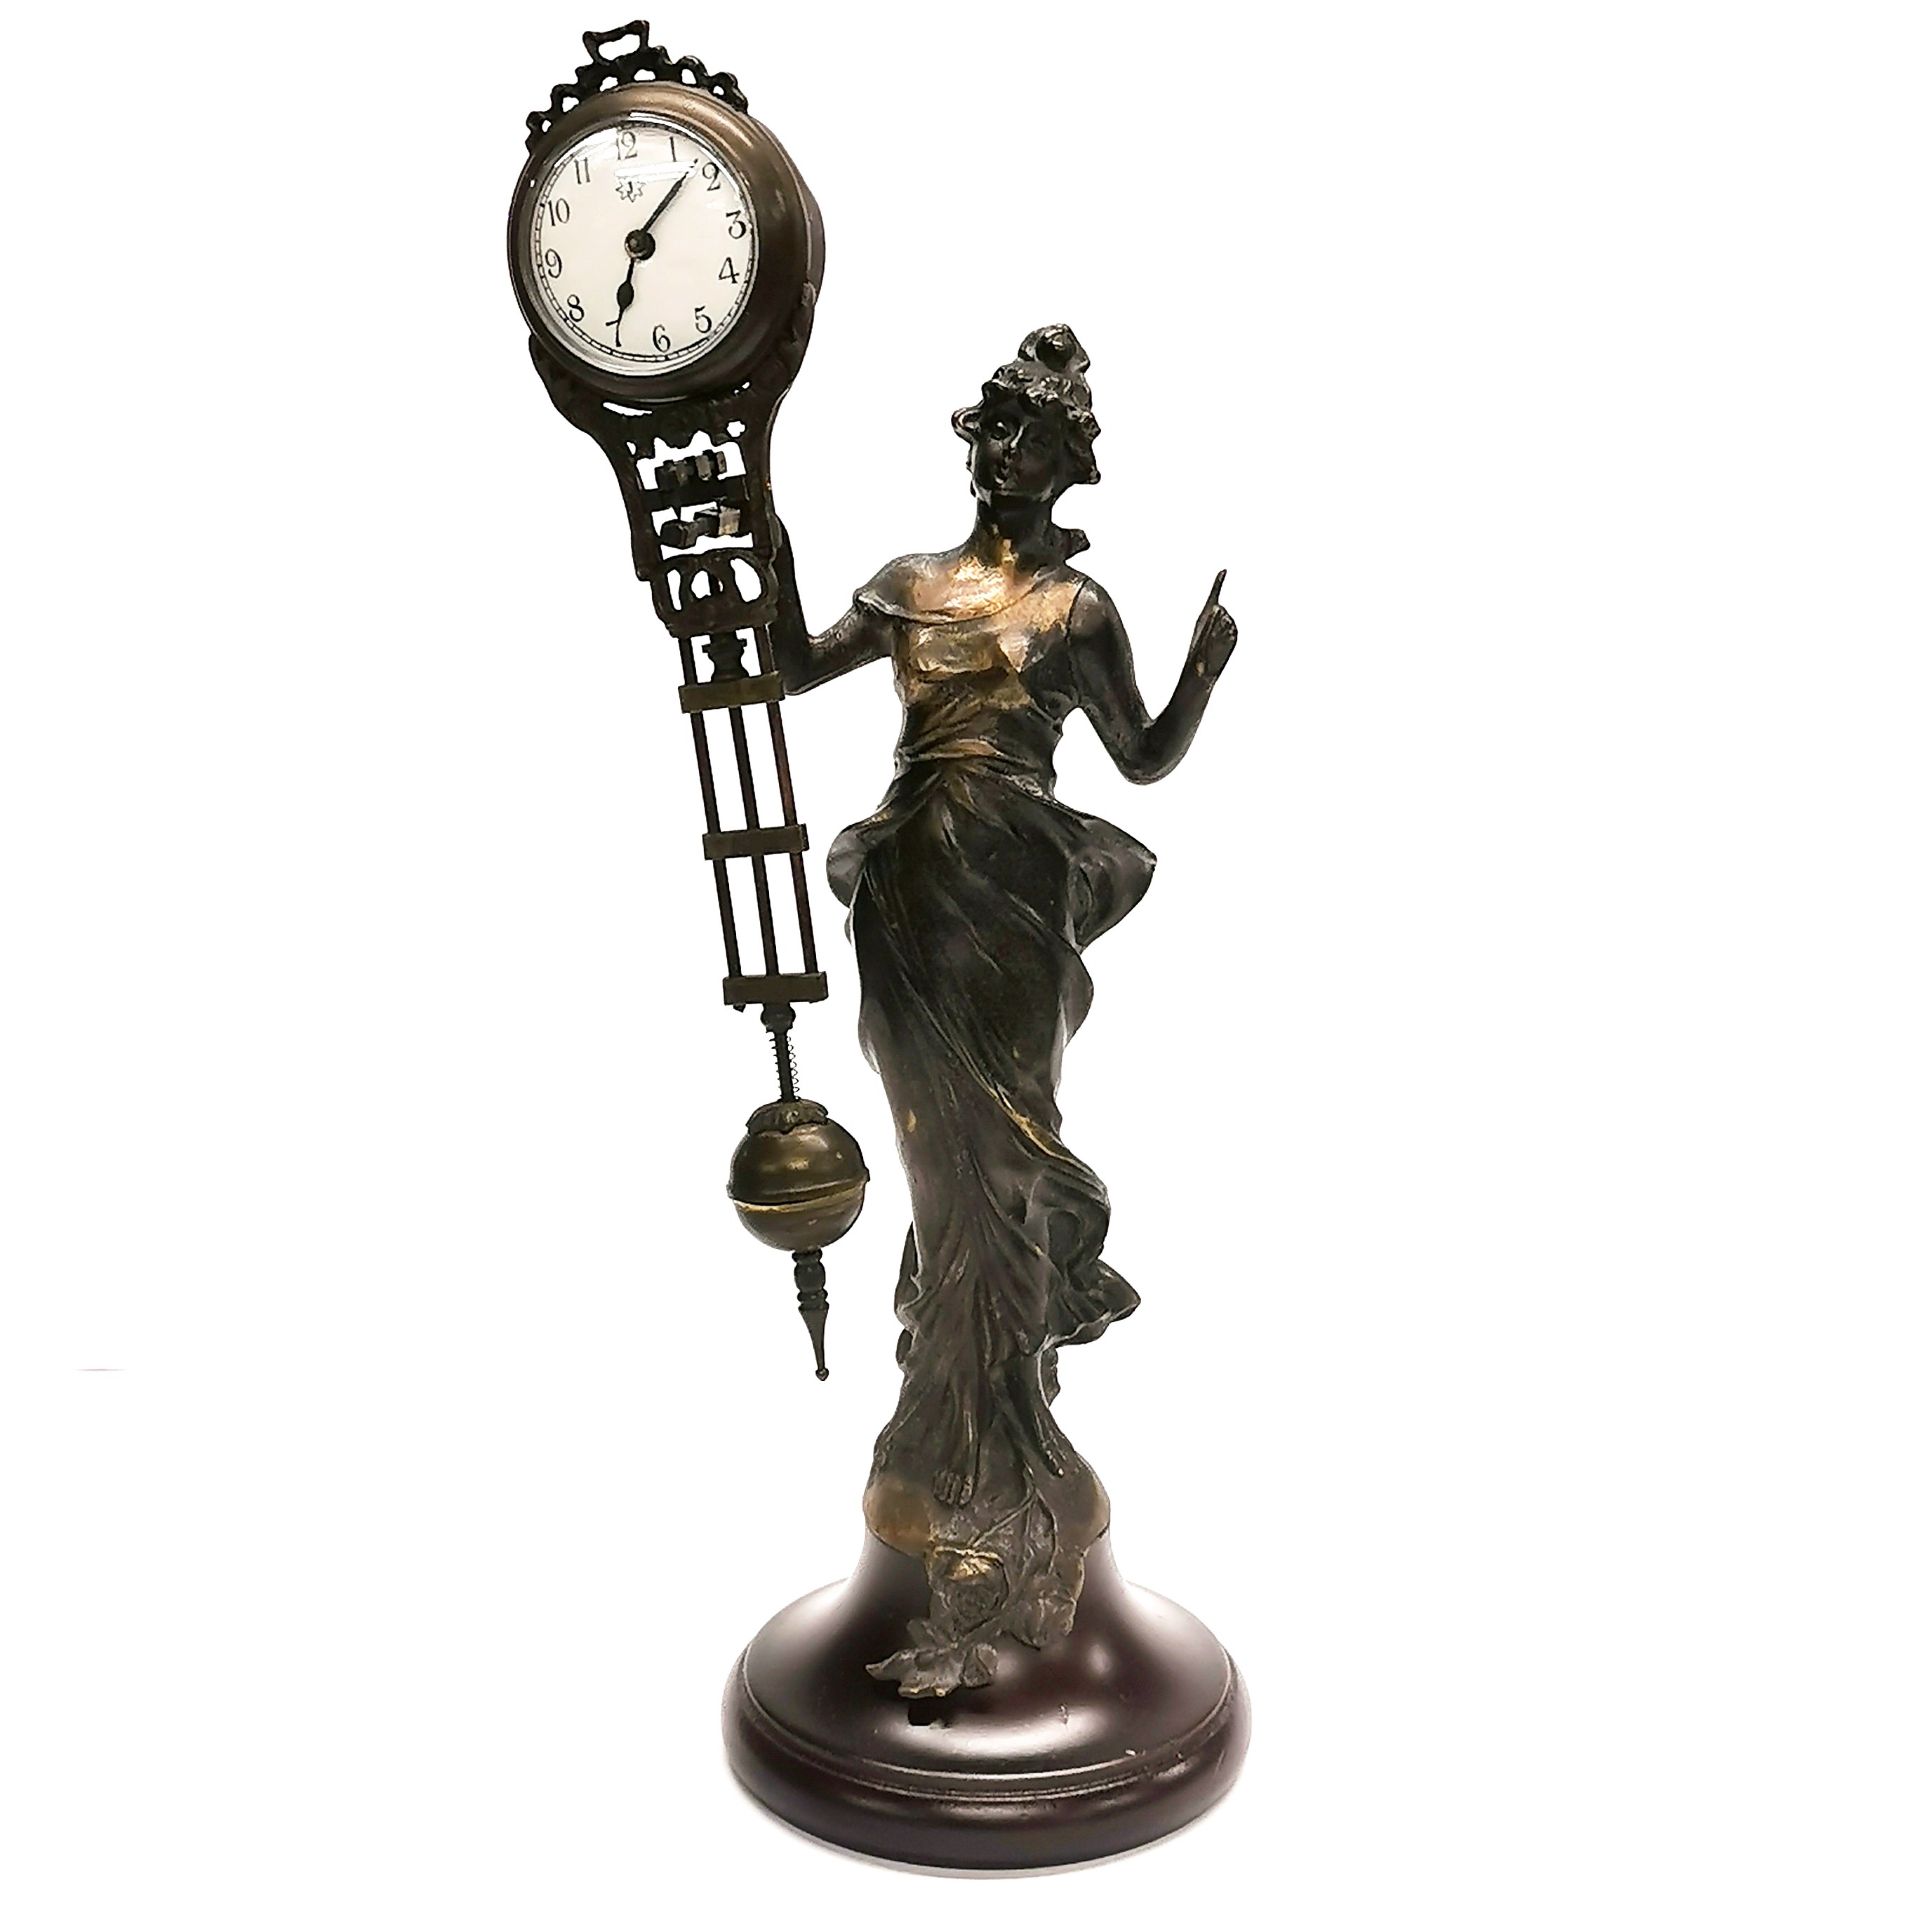 An Art Nouveau style bronze clock, H. 34cm.